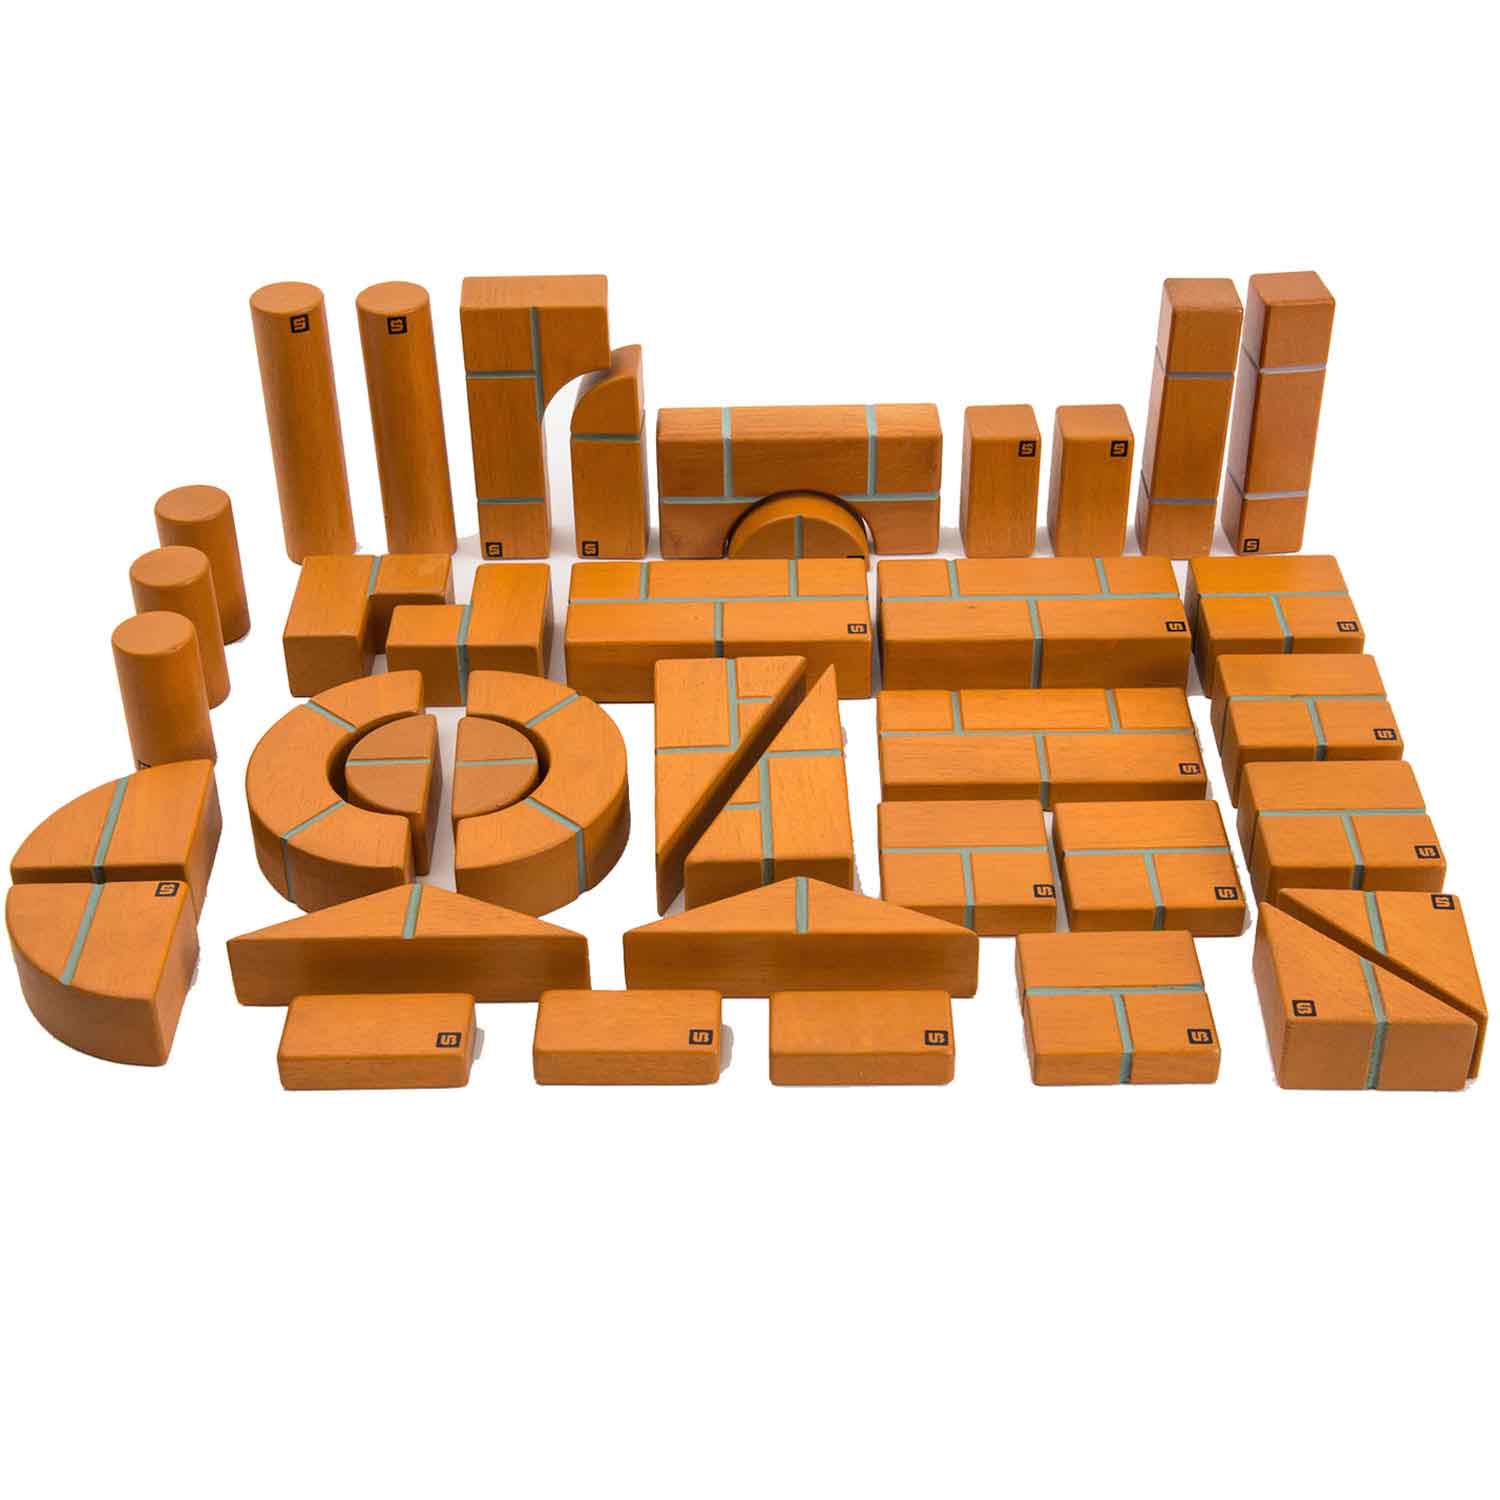 Unit Bricks, 100 Piece Set